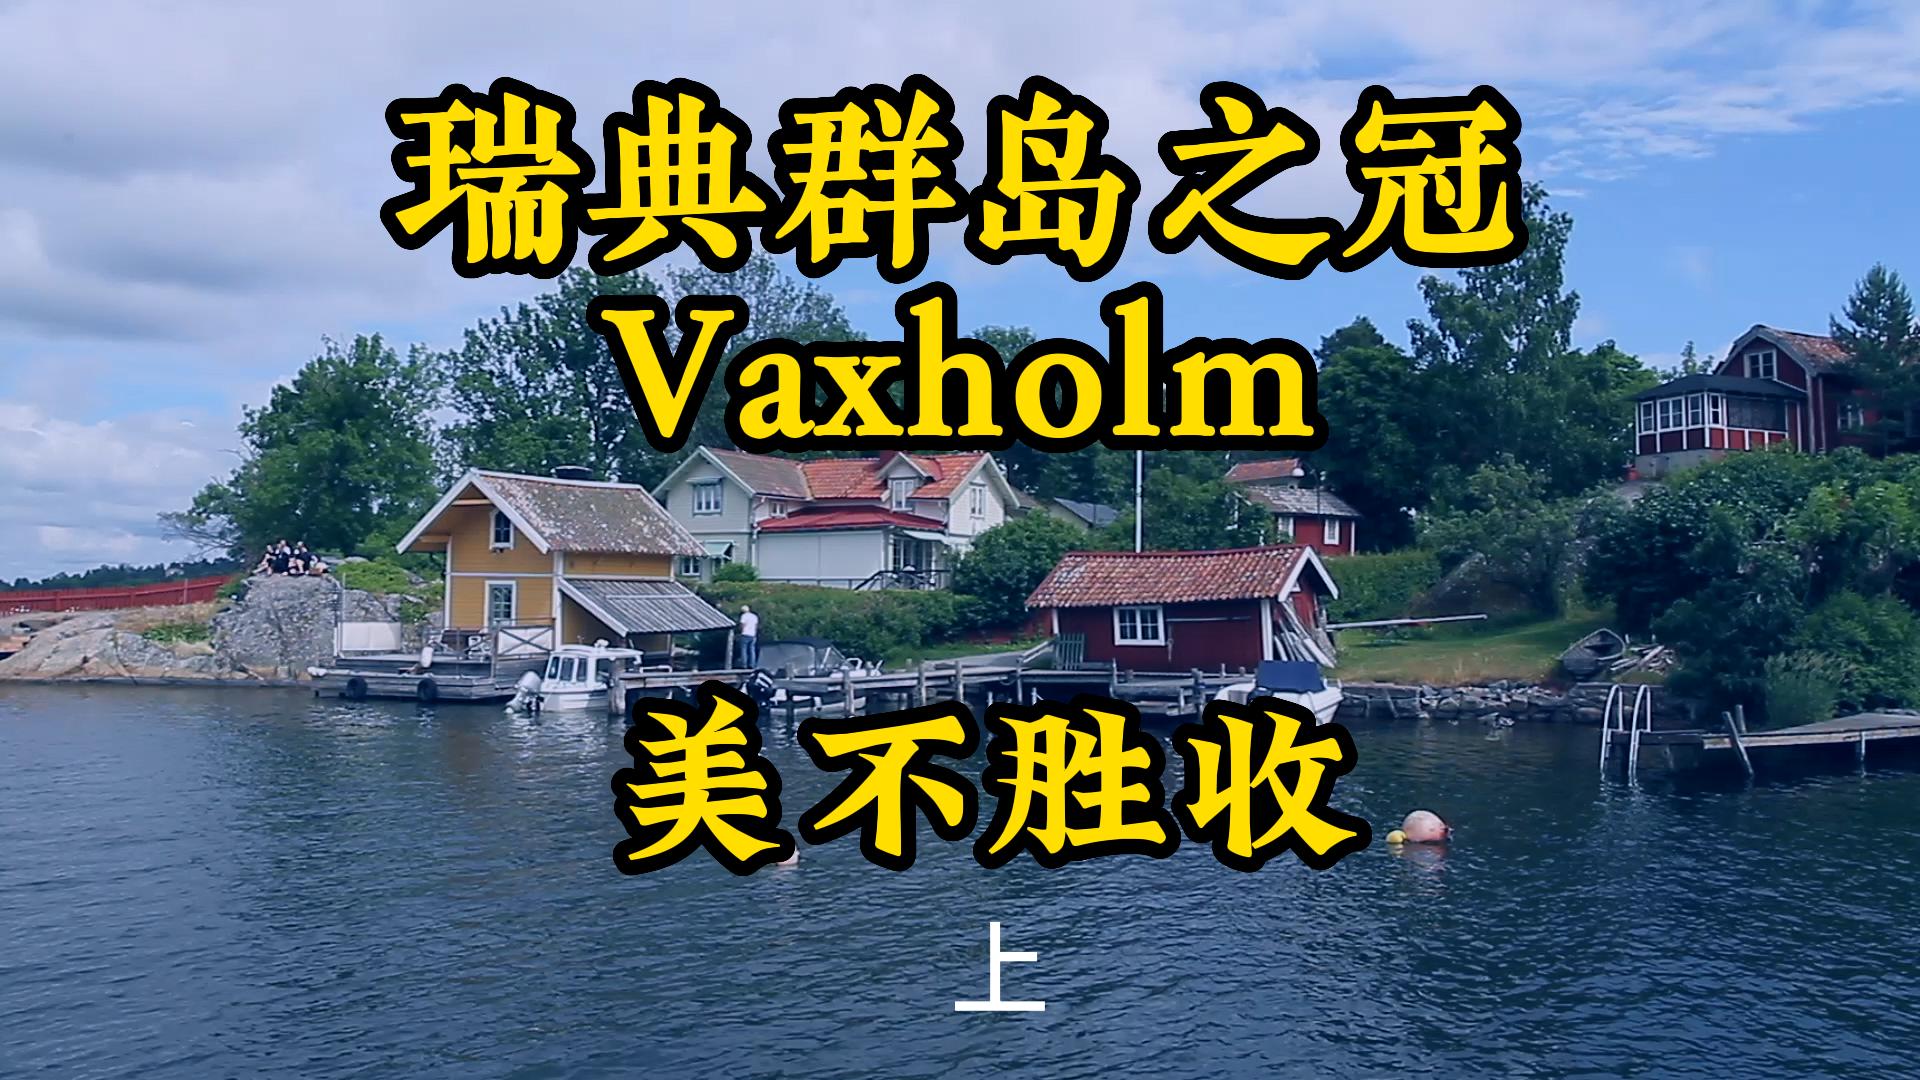 北欧瑞典群岛旅游Vaxholm美不胜收1